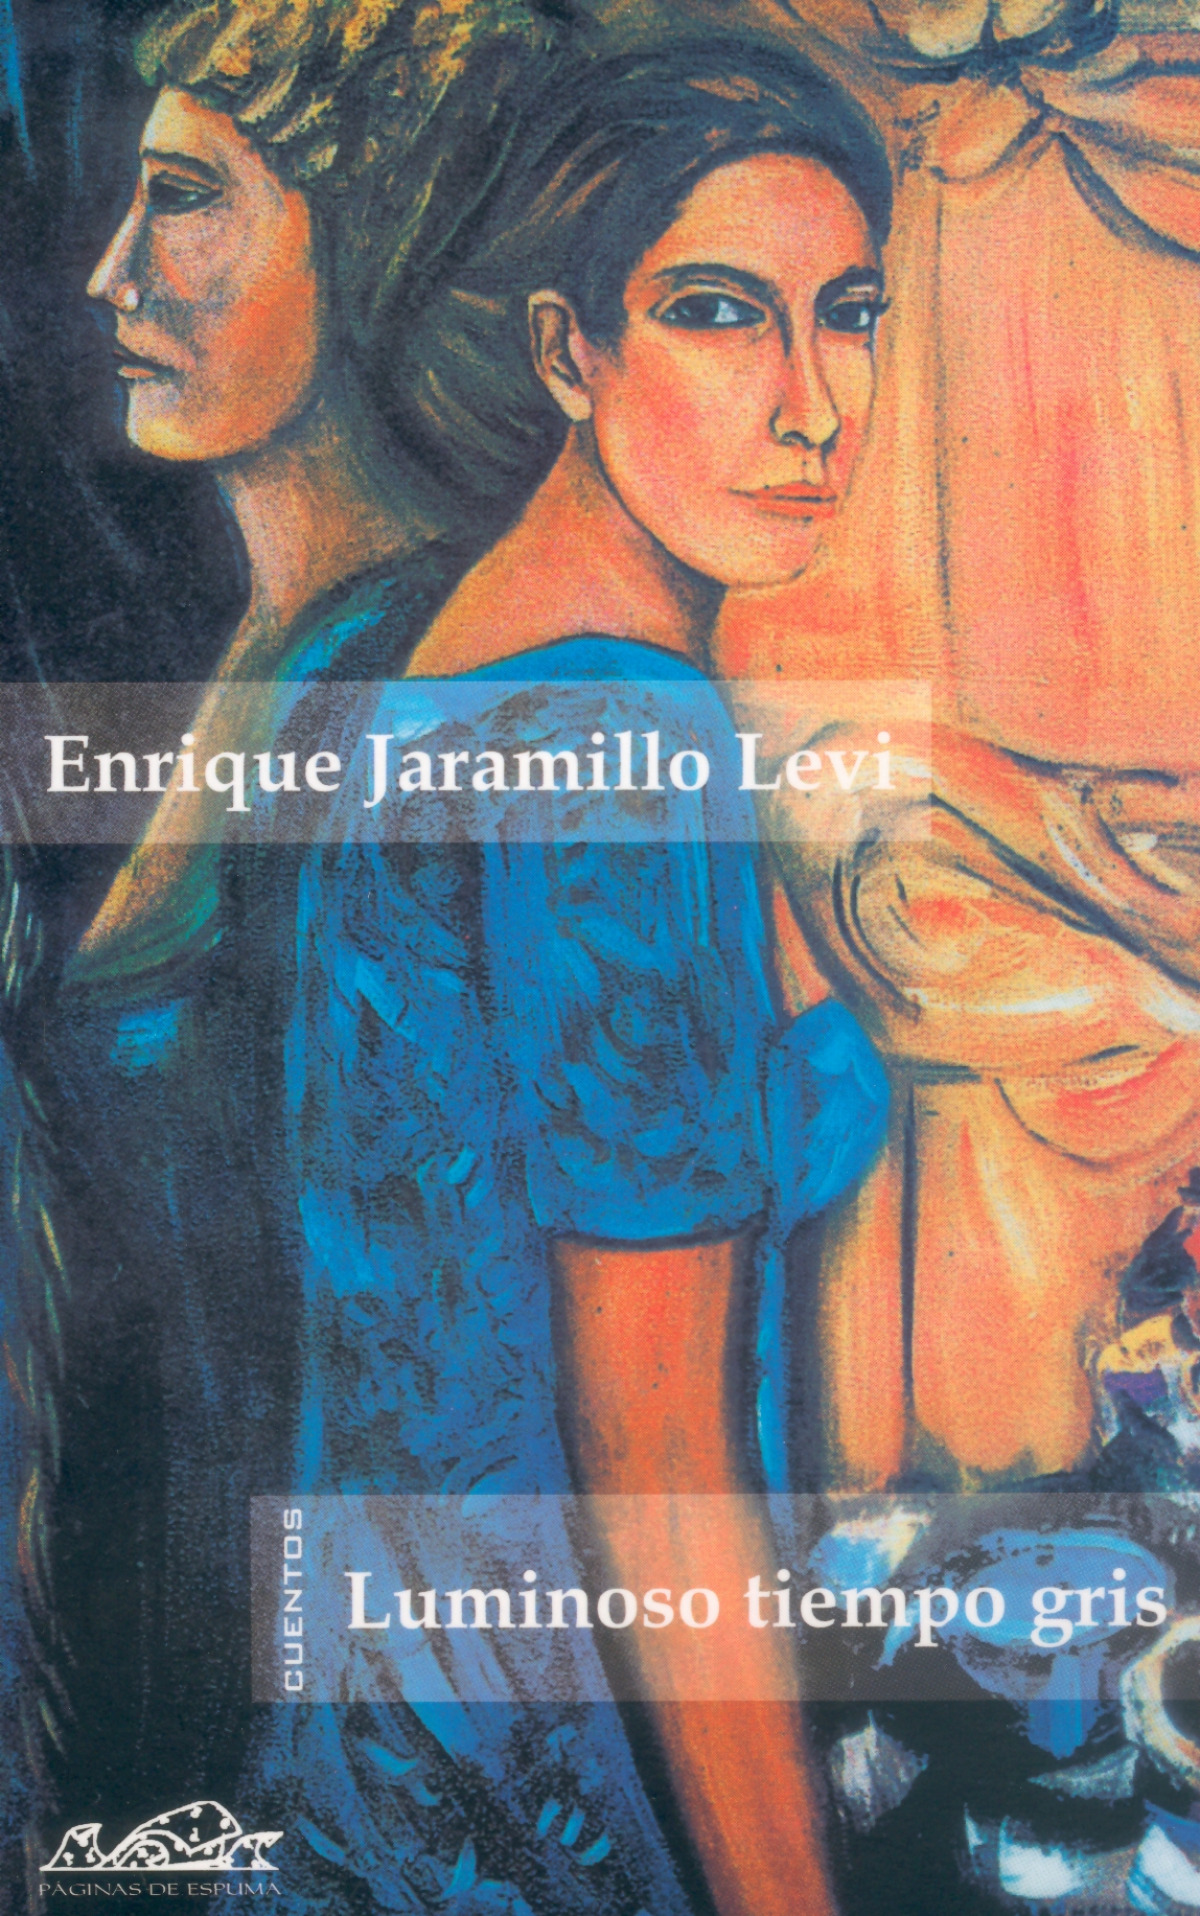 Luminoso tiempo gris - Jaramillo, Enrique